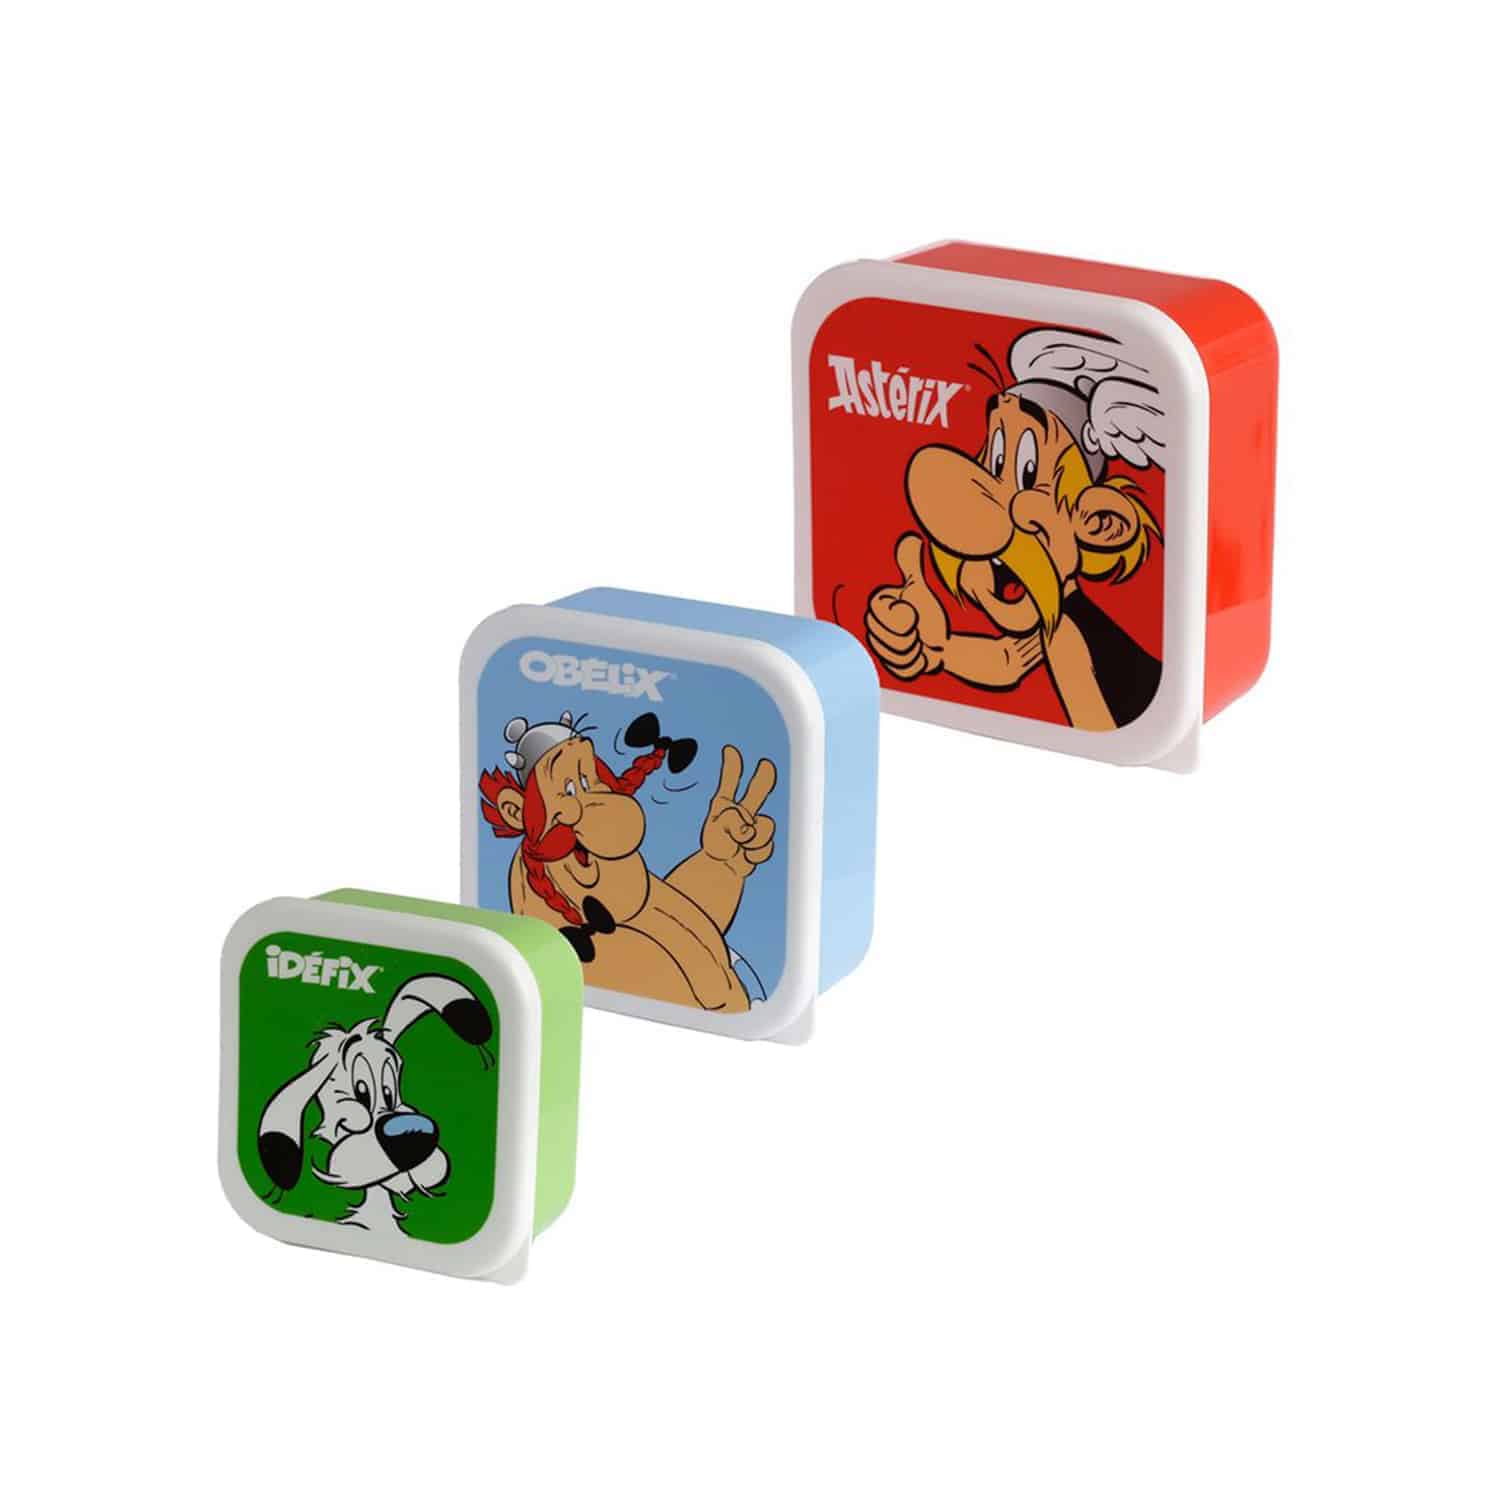 Asterix - Lunchboxes Set of 3 - Asterix, Obelix, Dogmatix (Idefix)-